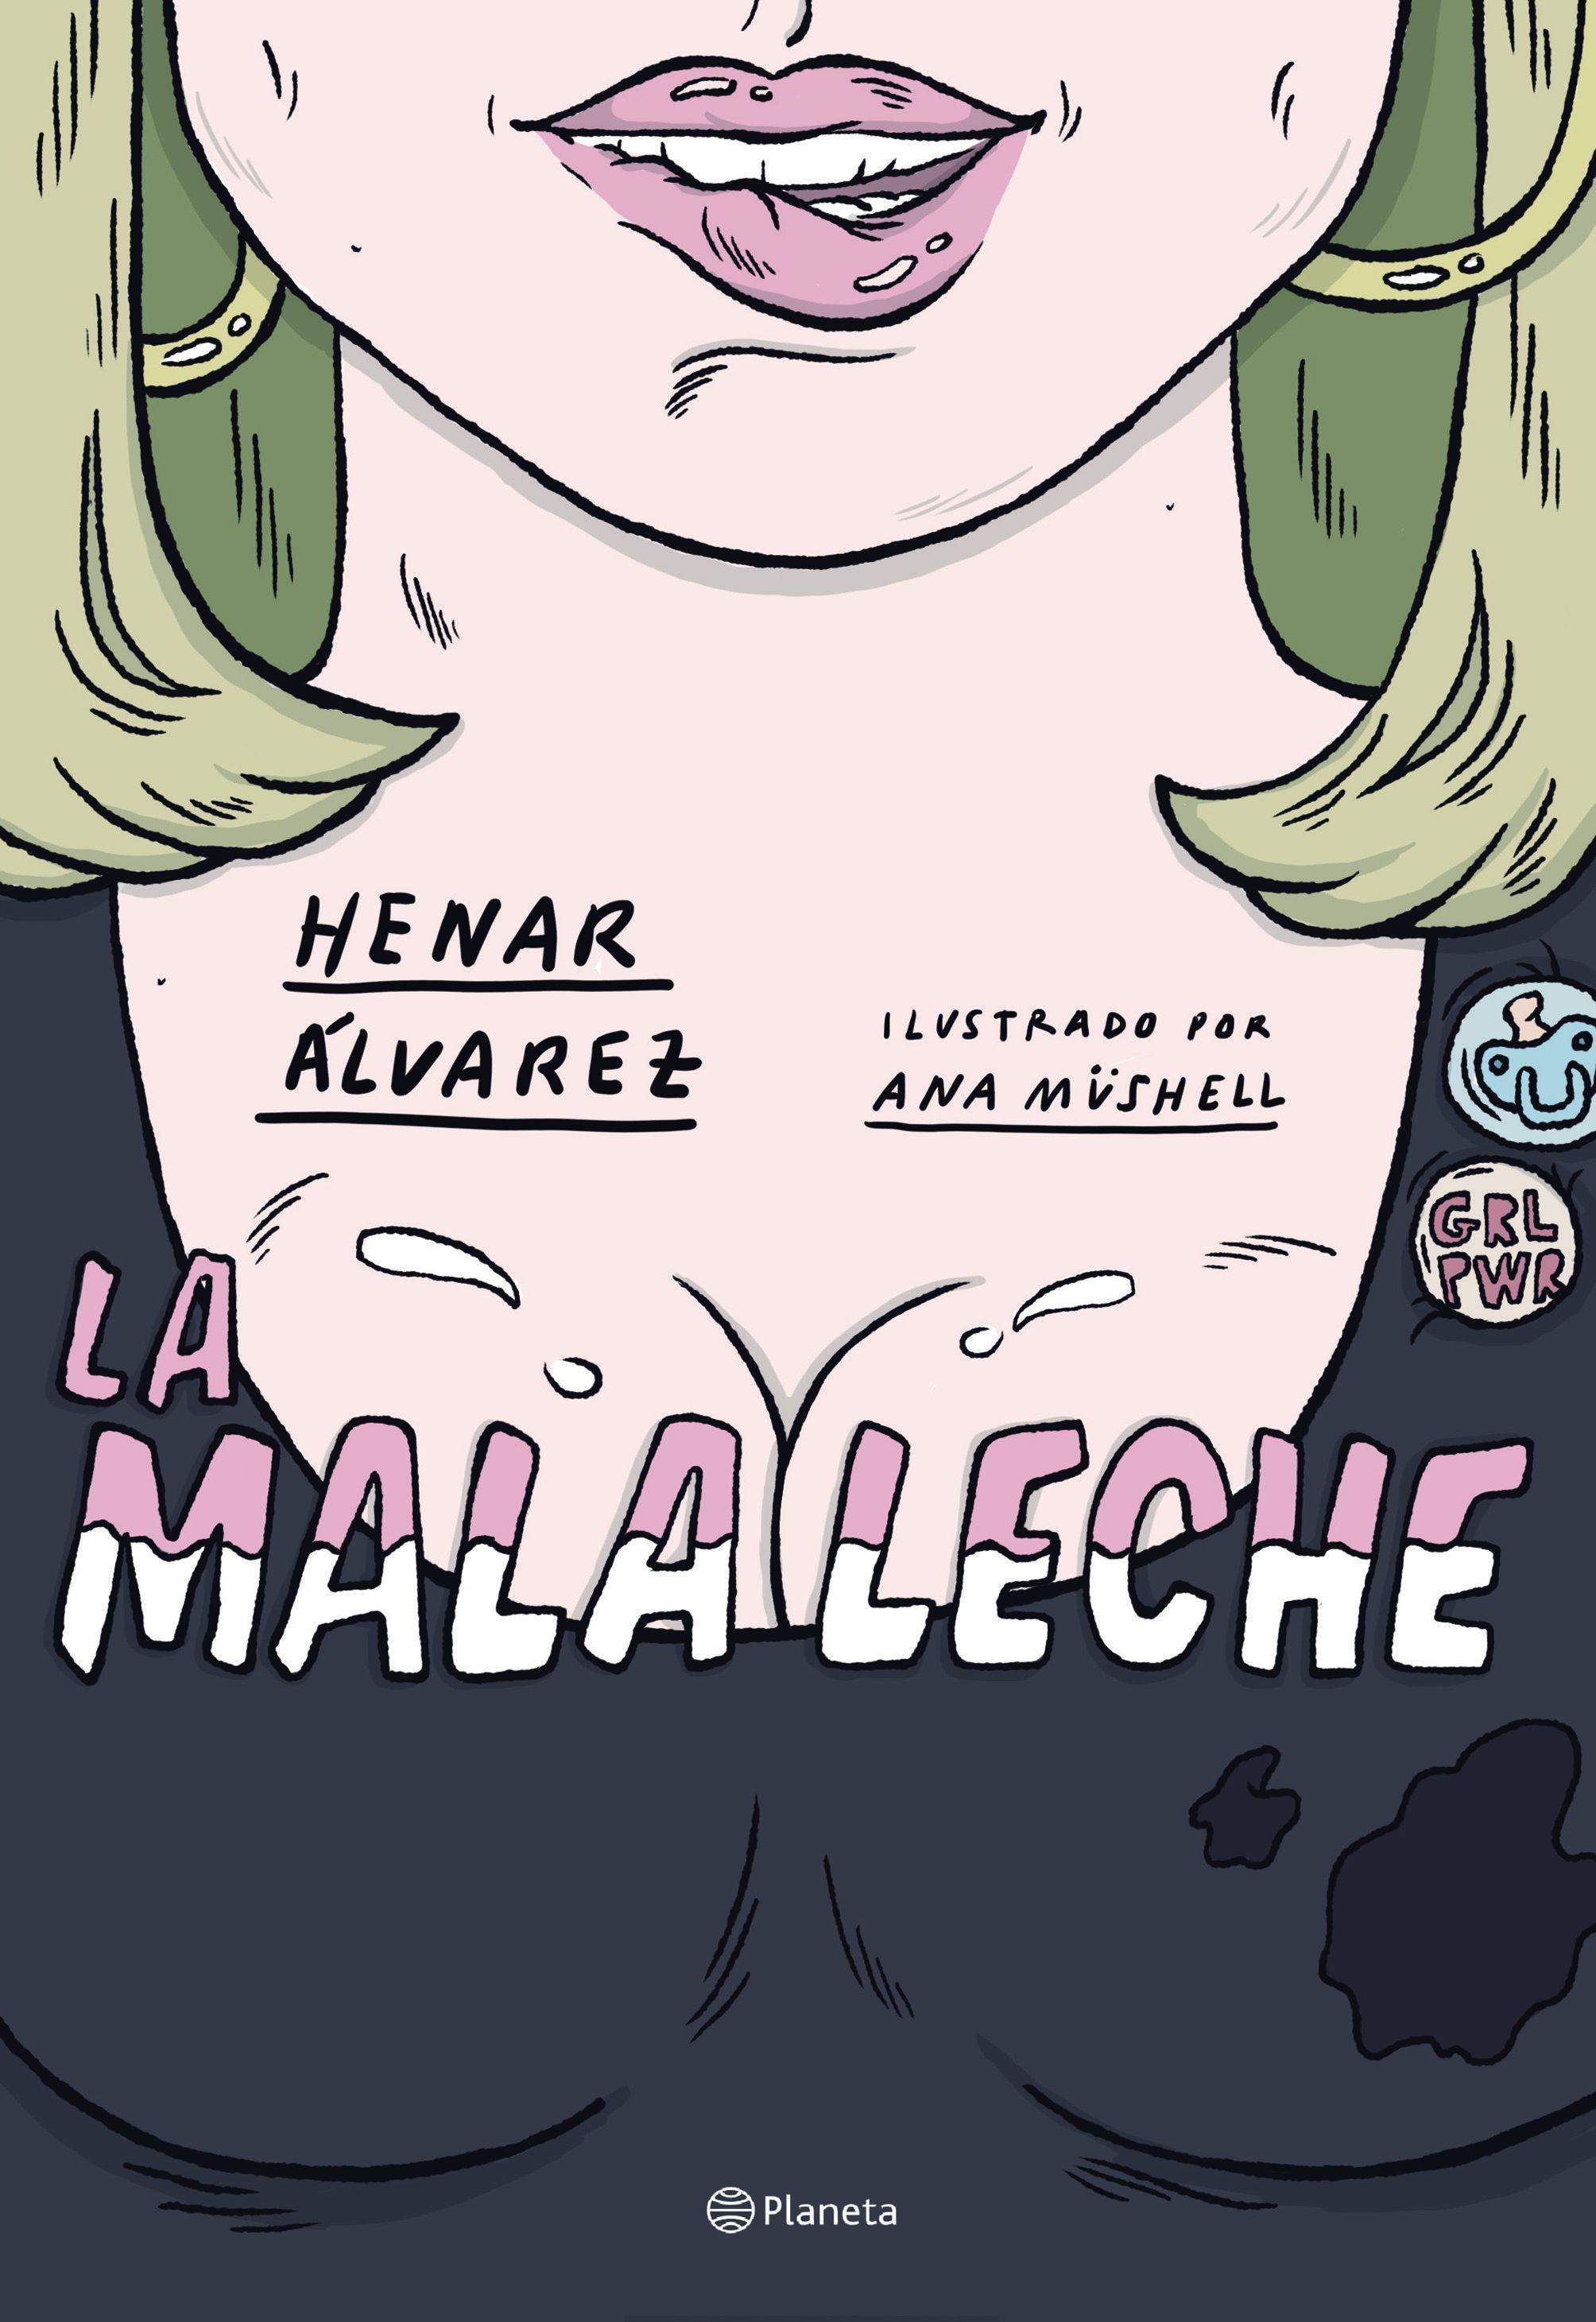 La Mala Leche "Ilustrado por Ana Müshell"